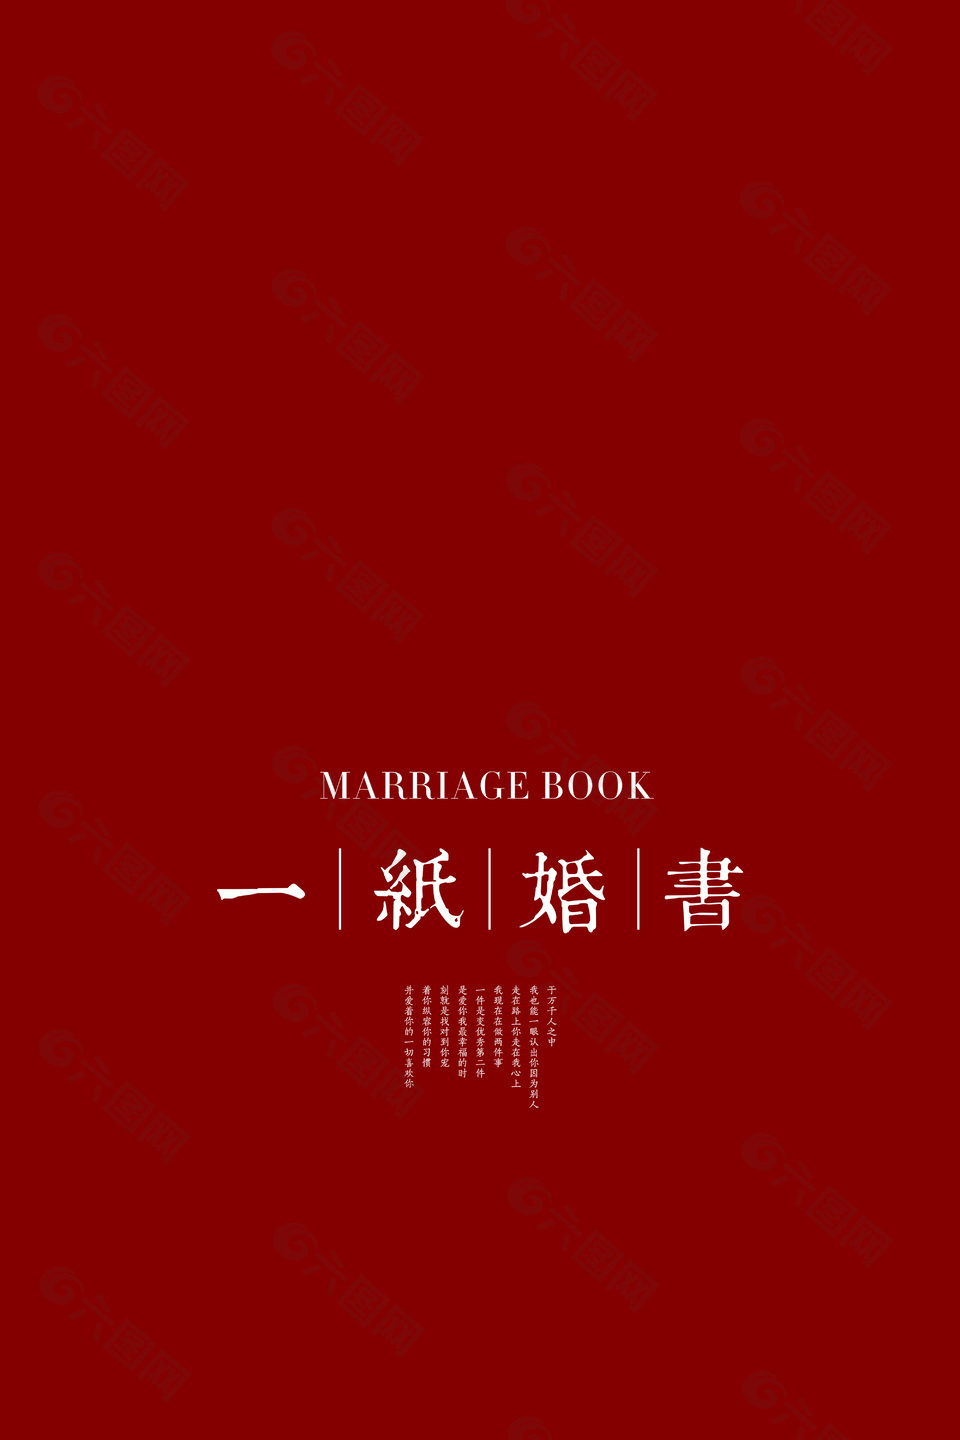 一纸婚书结婚红色背景图片